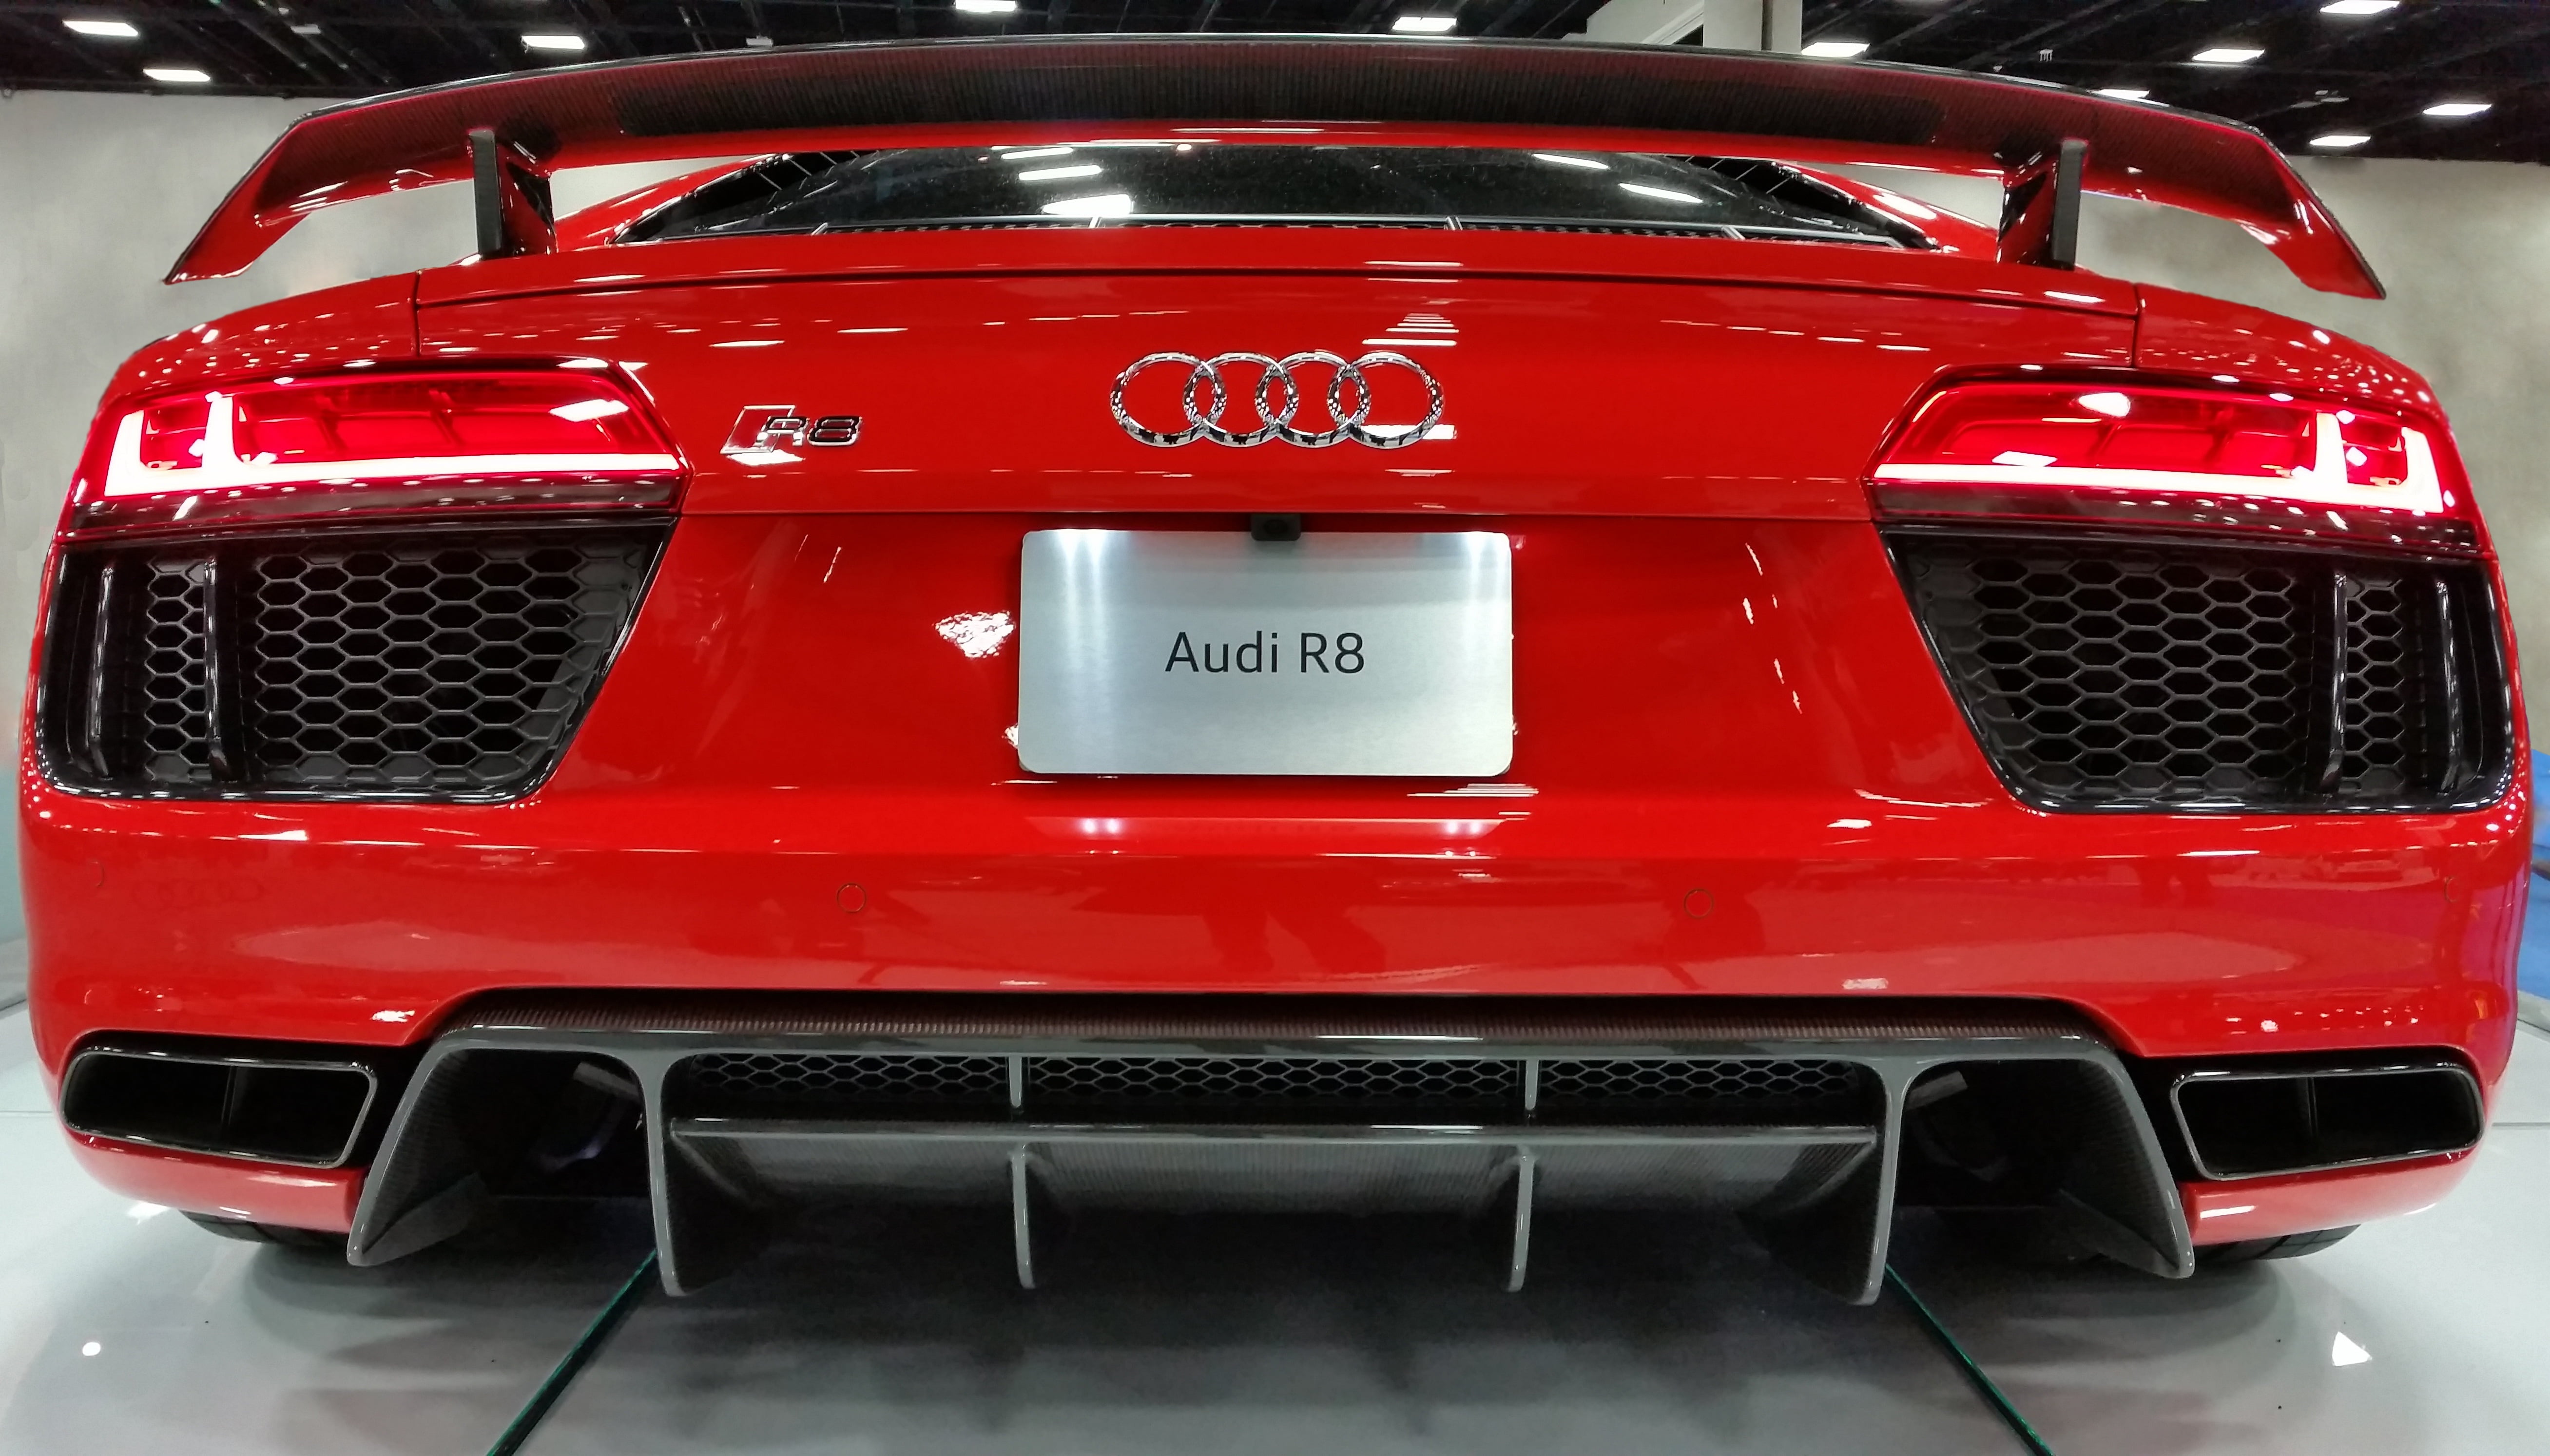 red Audi R8, car, land Vehicle, luxury, shiny, transportation